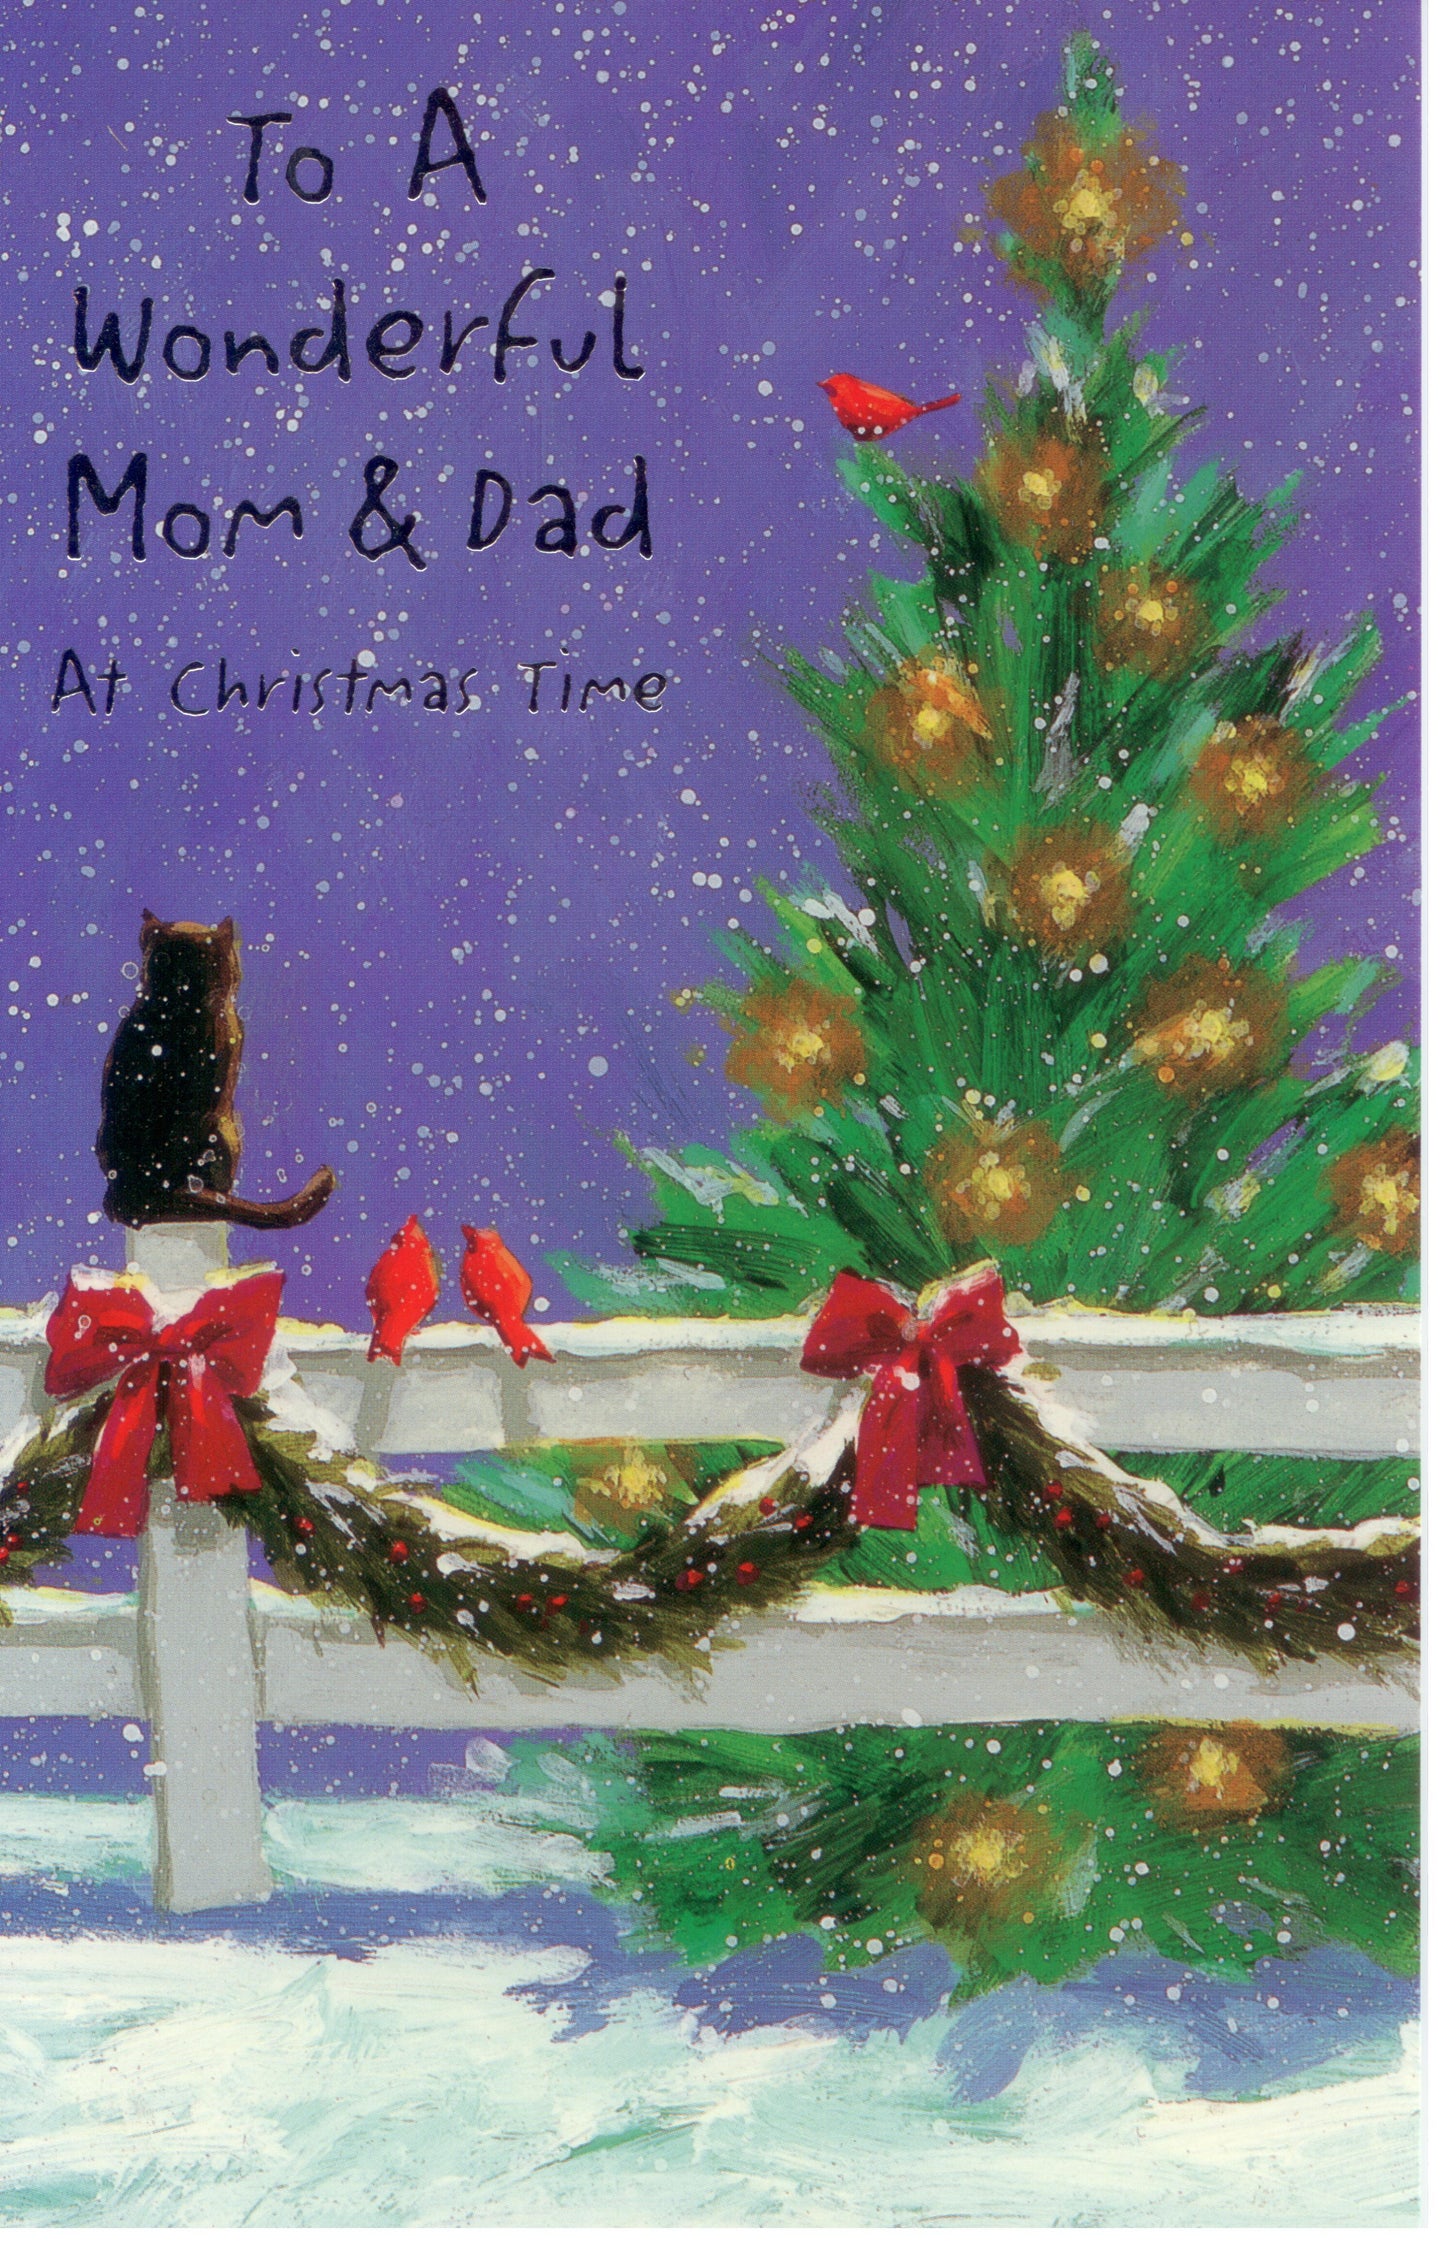 To Mom & Dad Christmas Card